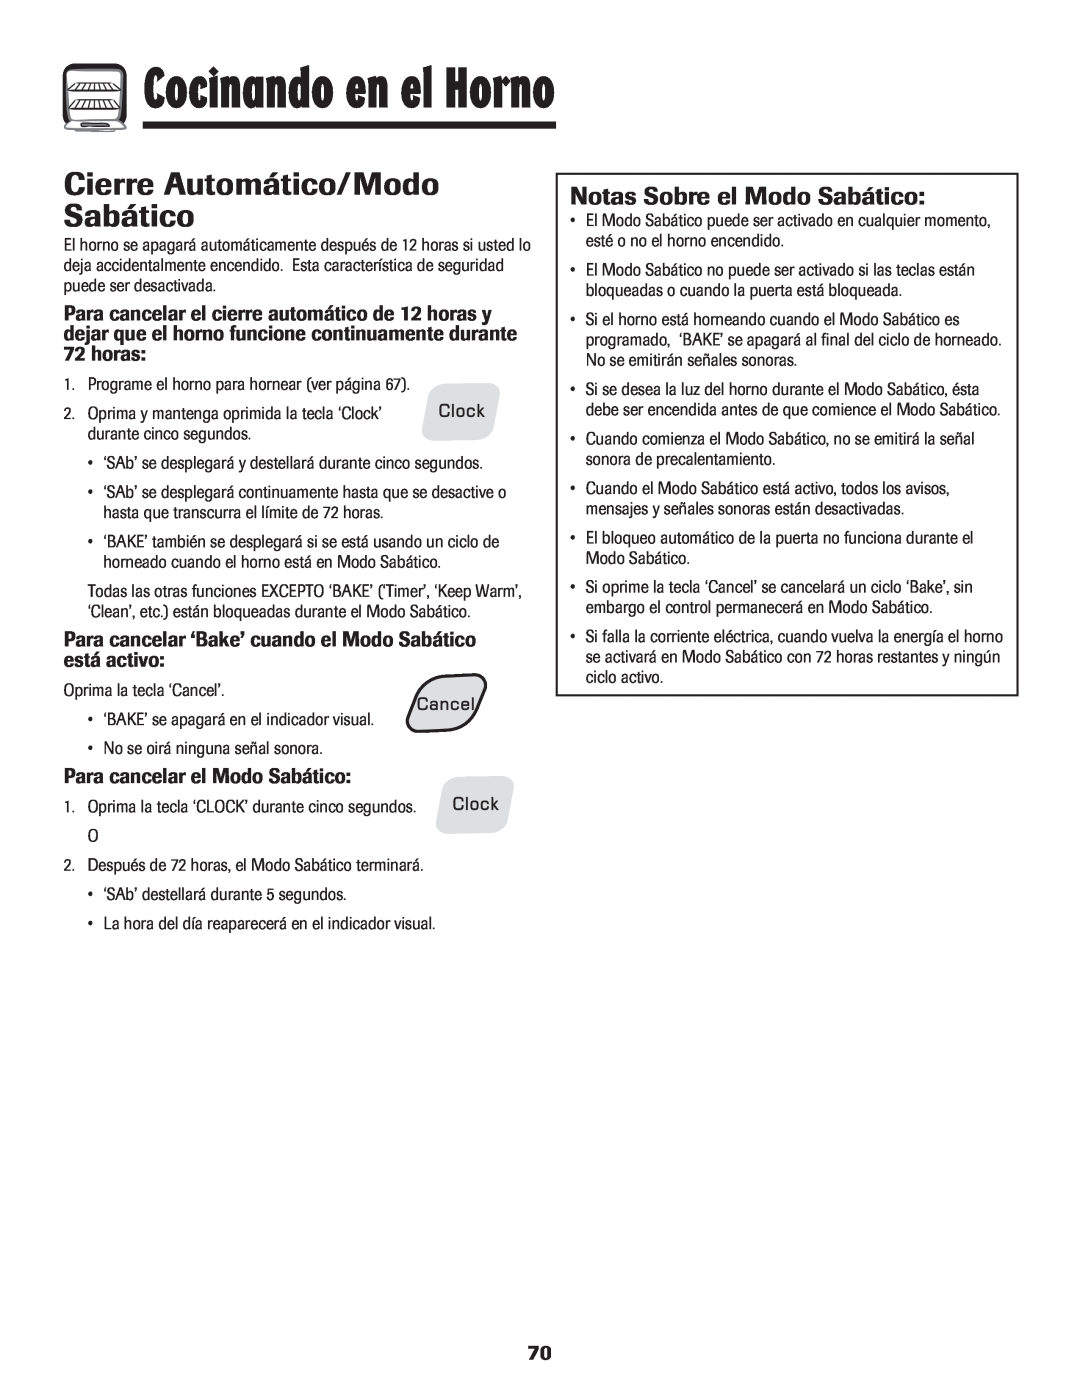 Amana 8113P454-60 Cierre Automático/Modo Sabático, Notas Sobre el Modo Sabático, horas, Para cancelar el Modo Sabático 